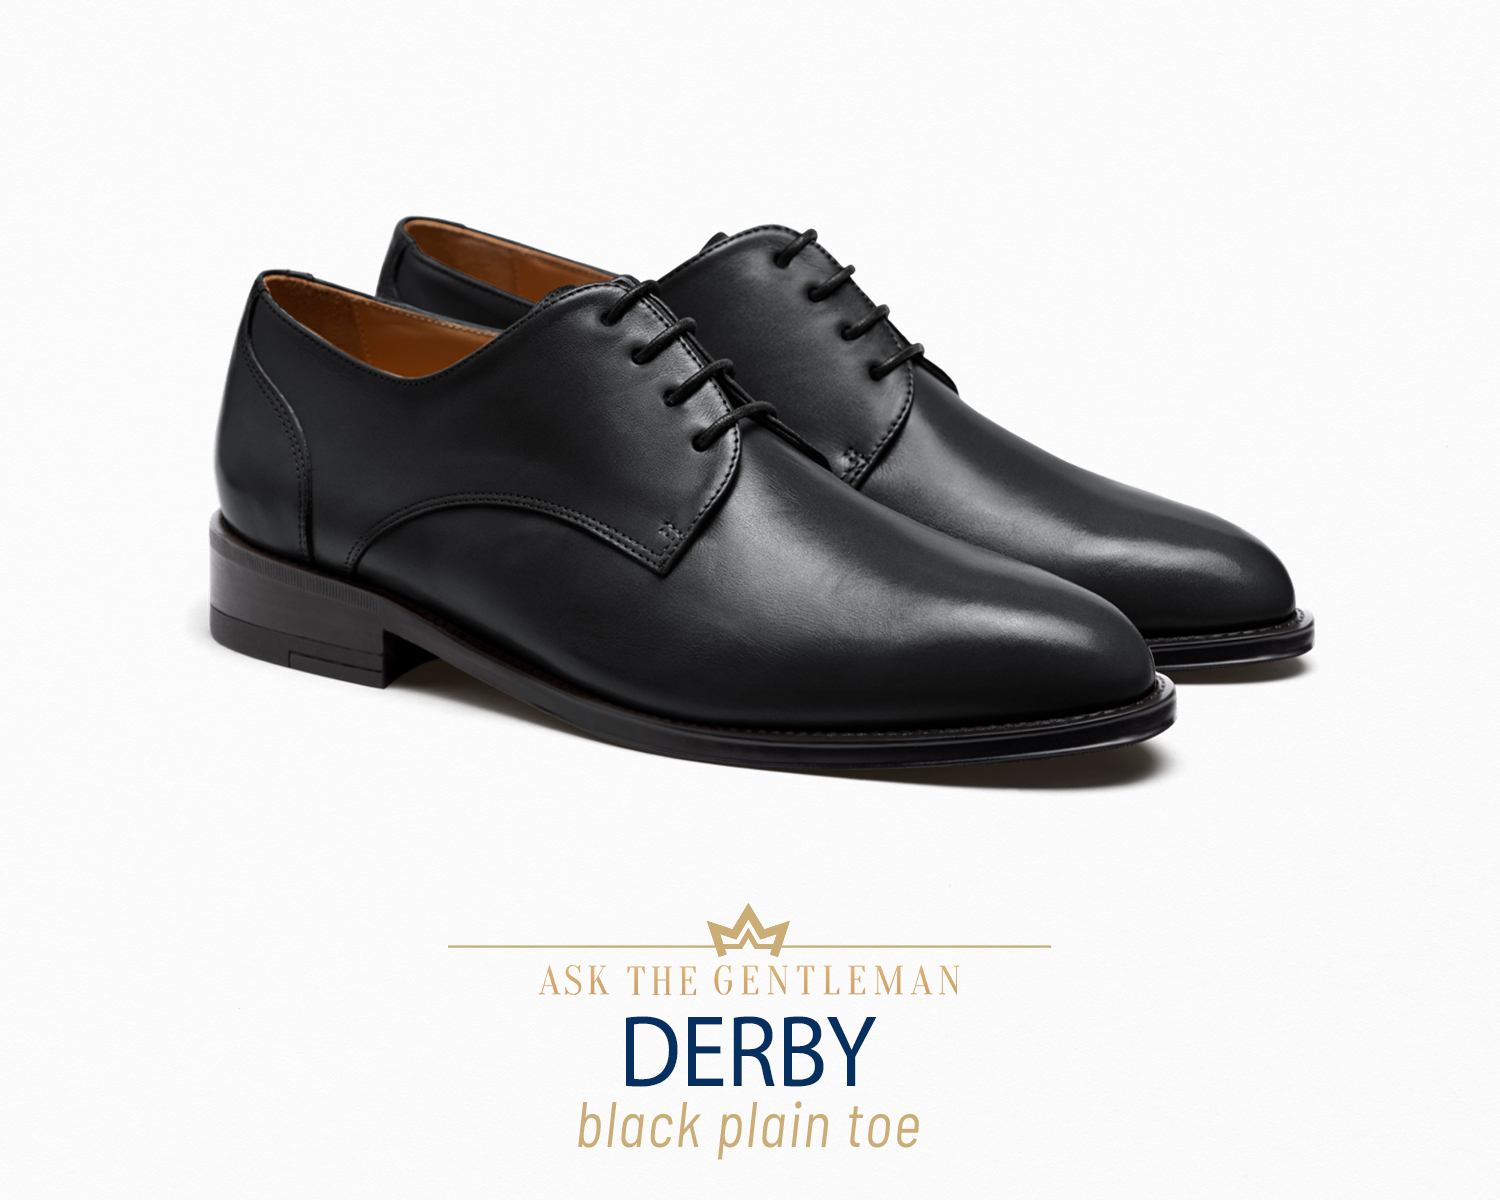 Black derby dress shoe